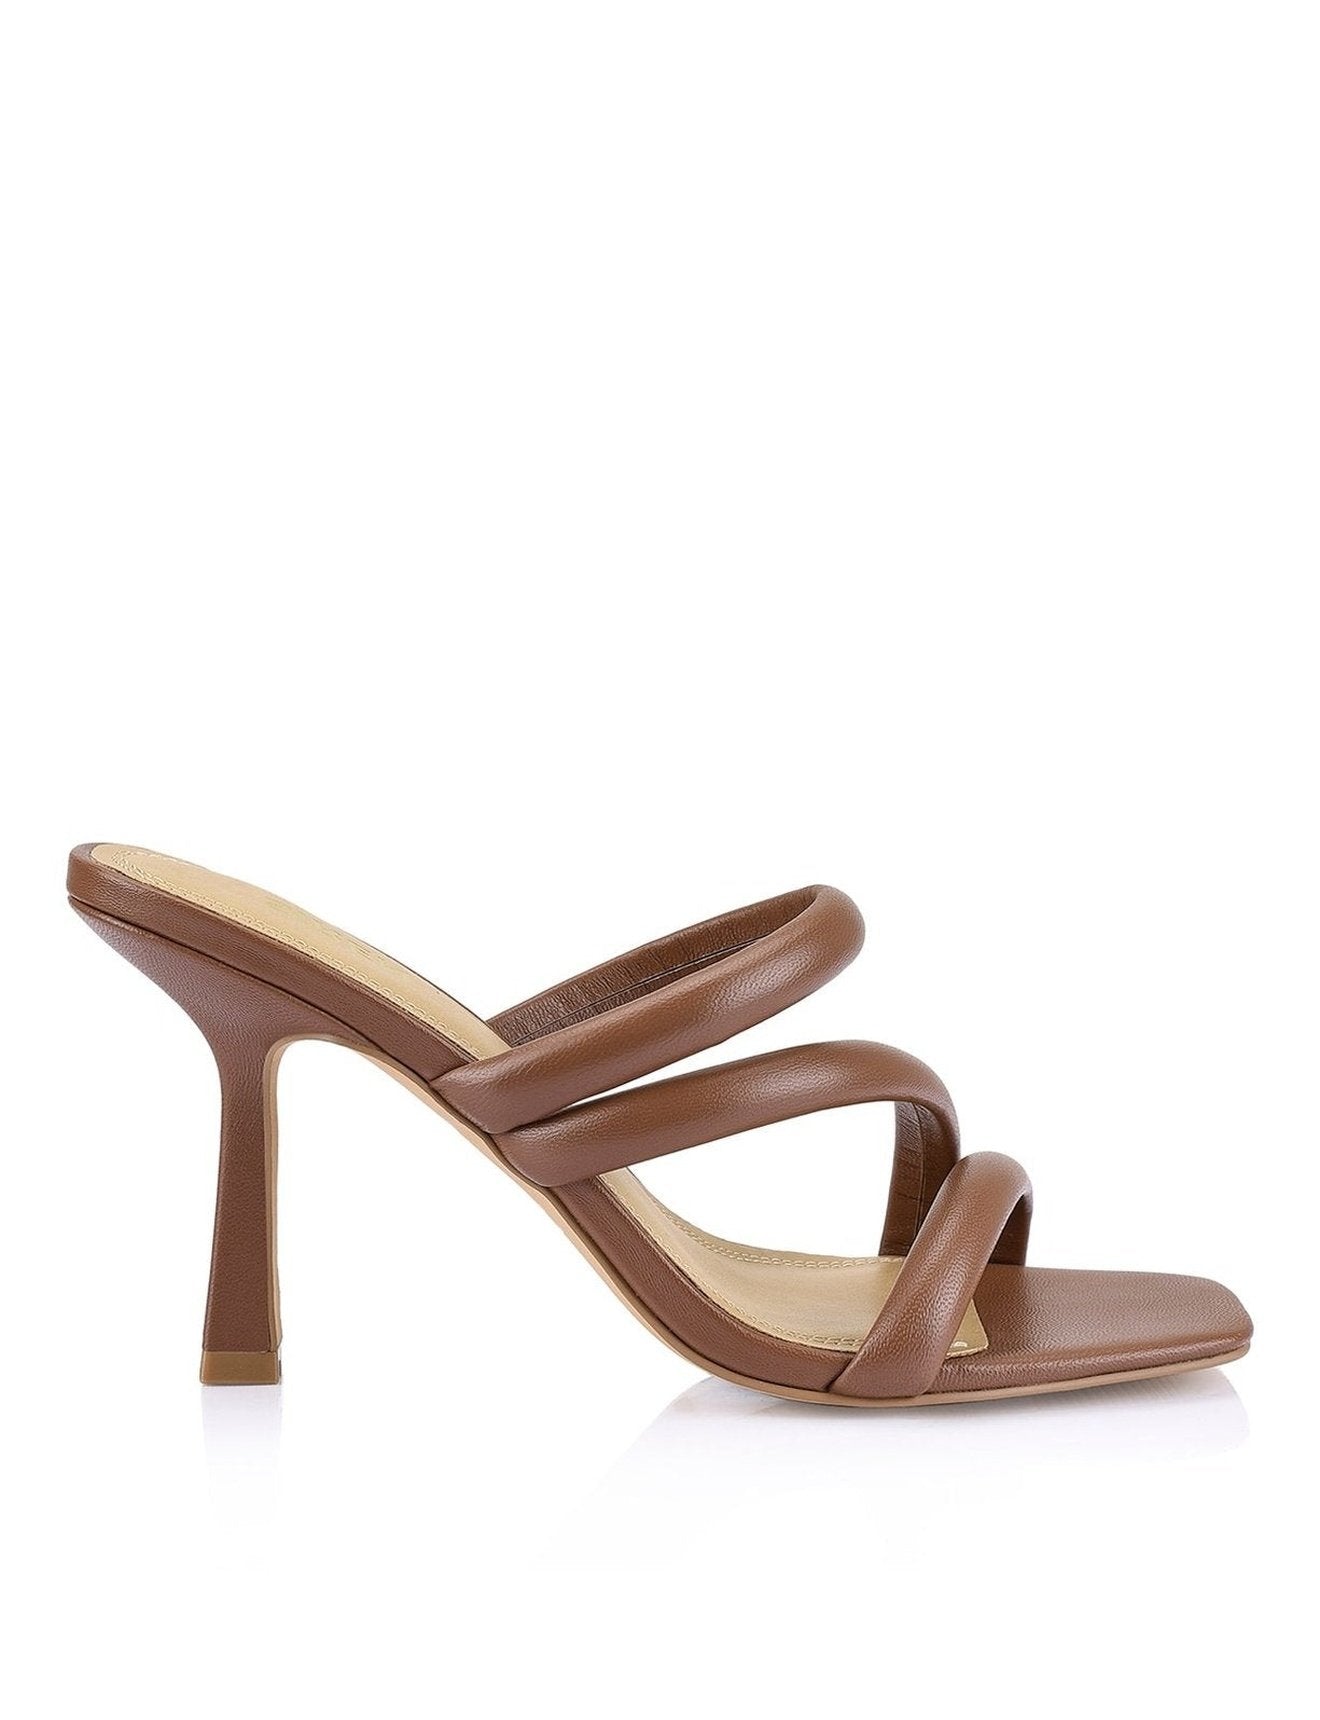 Spence Heeled Sandals - Cinnamon Leather